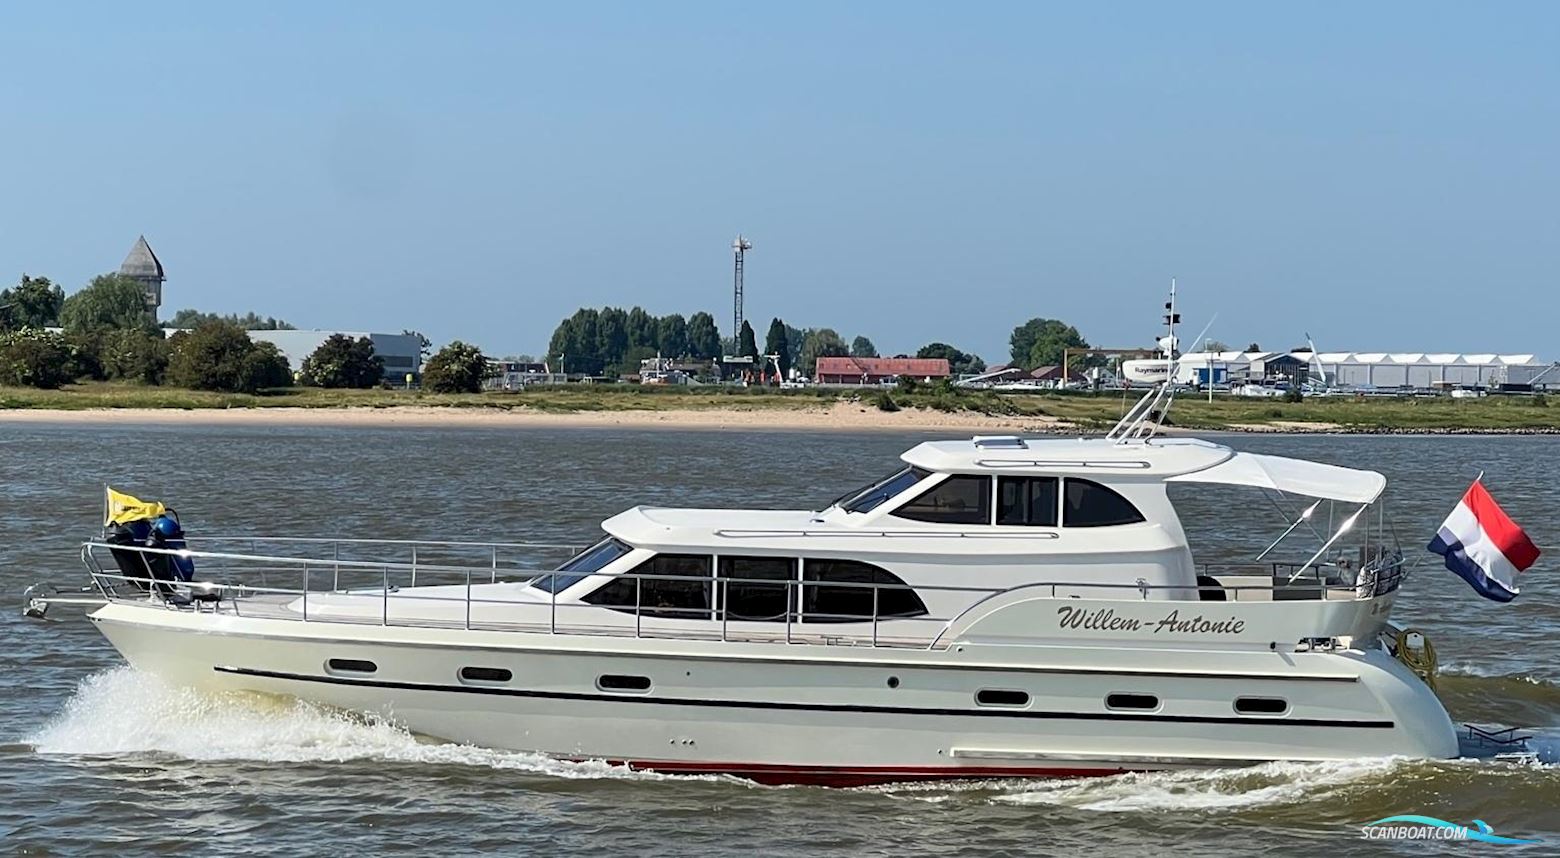 Aquanaut Unico 54 VS Motorbåt 2008, med Perkins motor, Holland